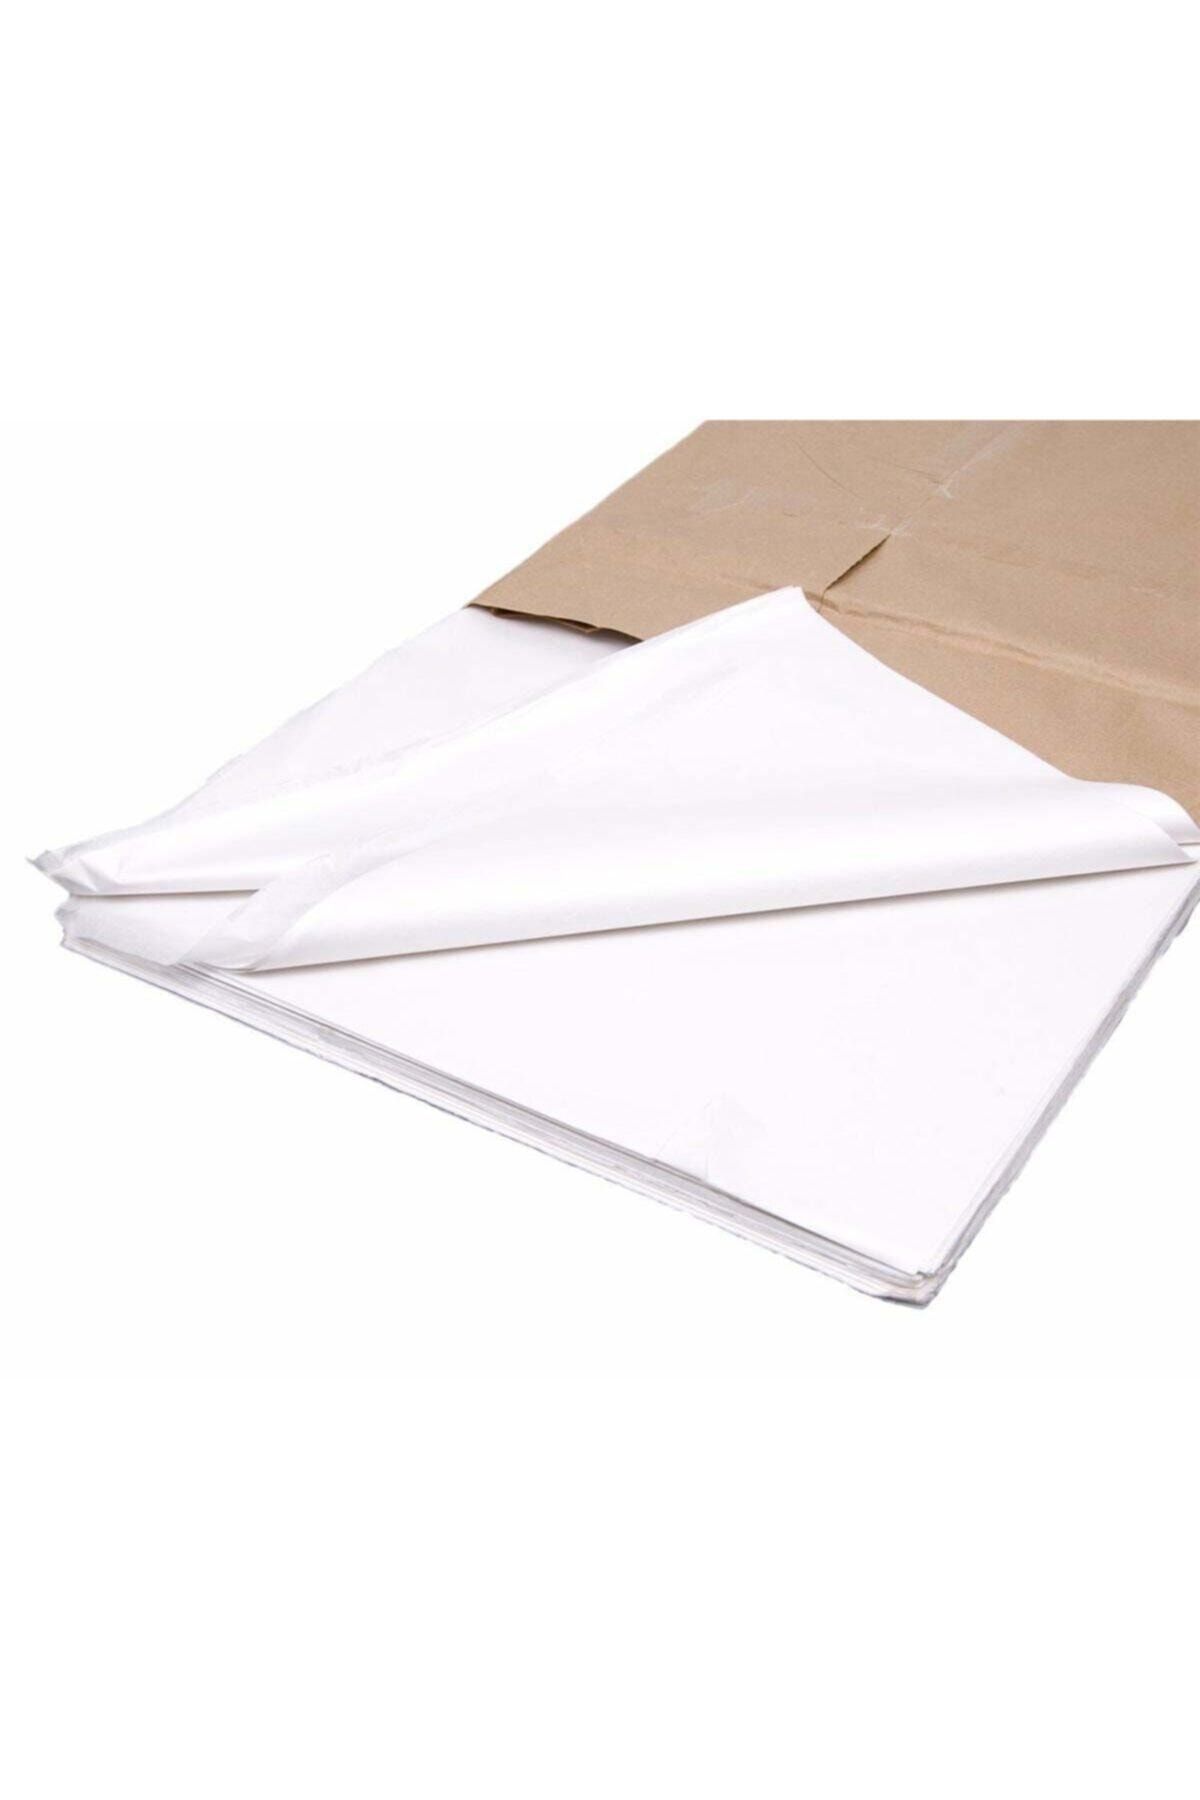 yamata kağıt Beyaz Pelur Kağıt 50x70 cm 100 Adet